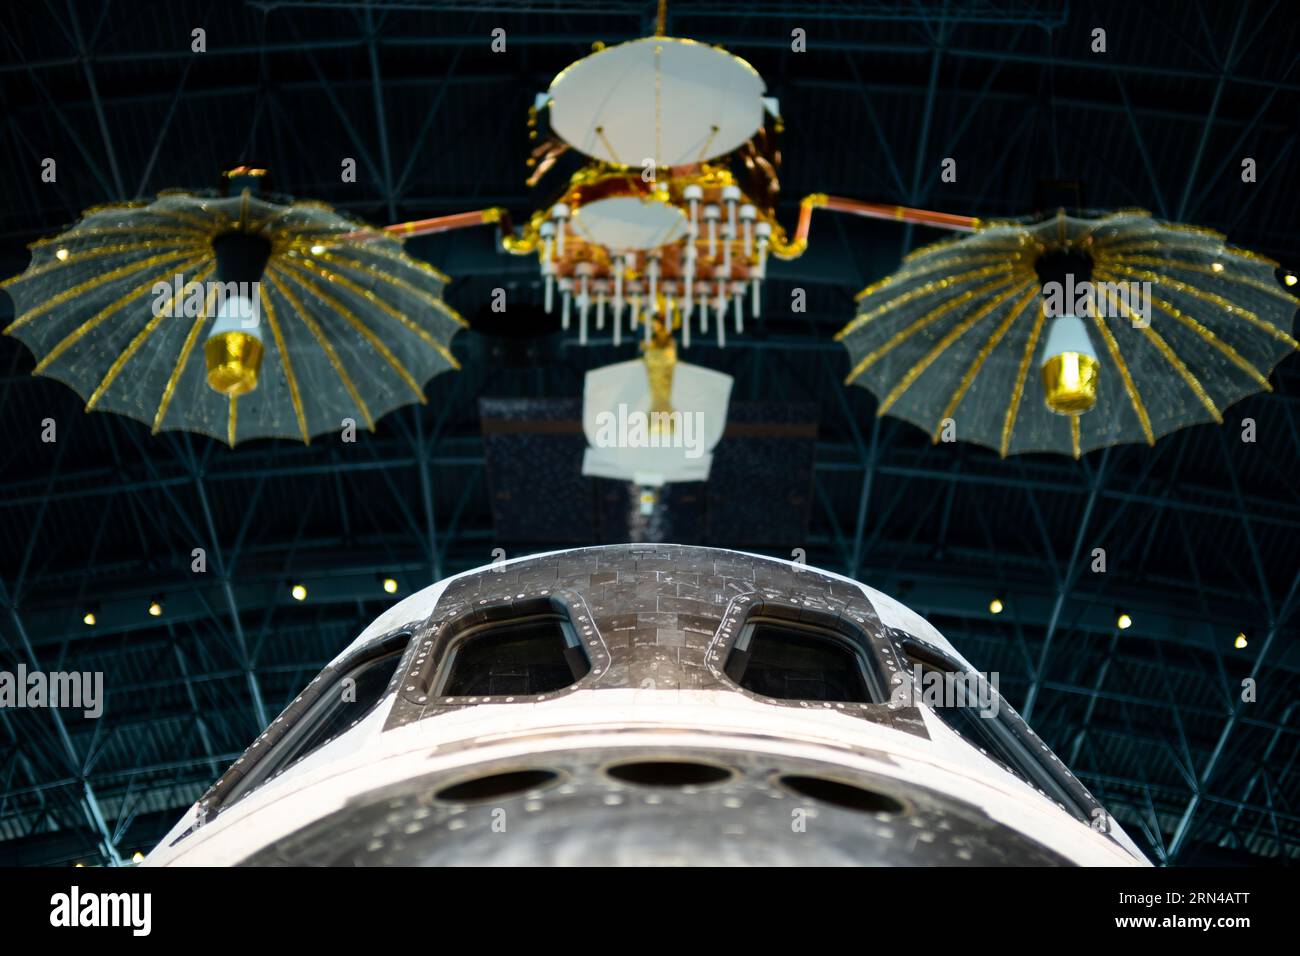 CHANTILLY, Virginie, États-Unis — la navette spatiale Discovery est exposée au Udvar-Hazy Center, une annexe du Smithsonian National Air and Space Museum. En tant qu'une des navettes phares de la NASA, Discovery a effectué 39 missions plus de 27 ans avant son départ à la retraite. Banque D'Images